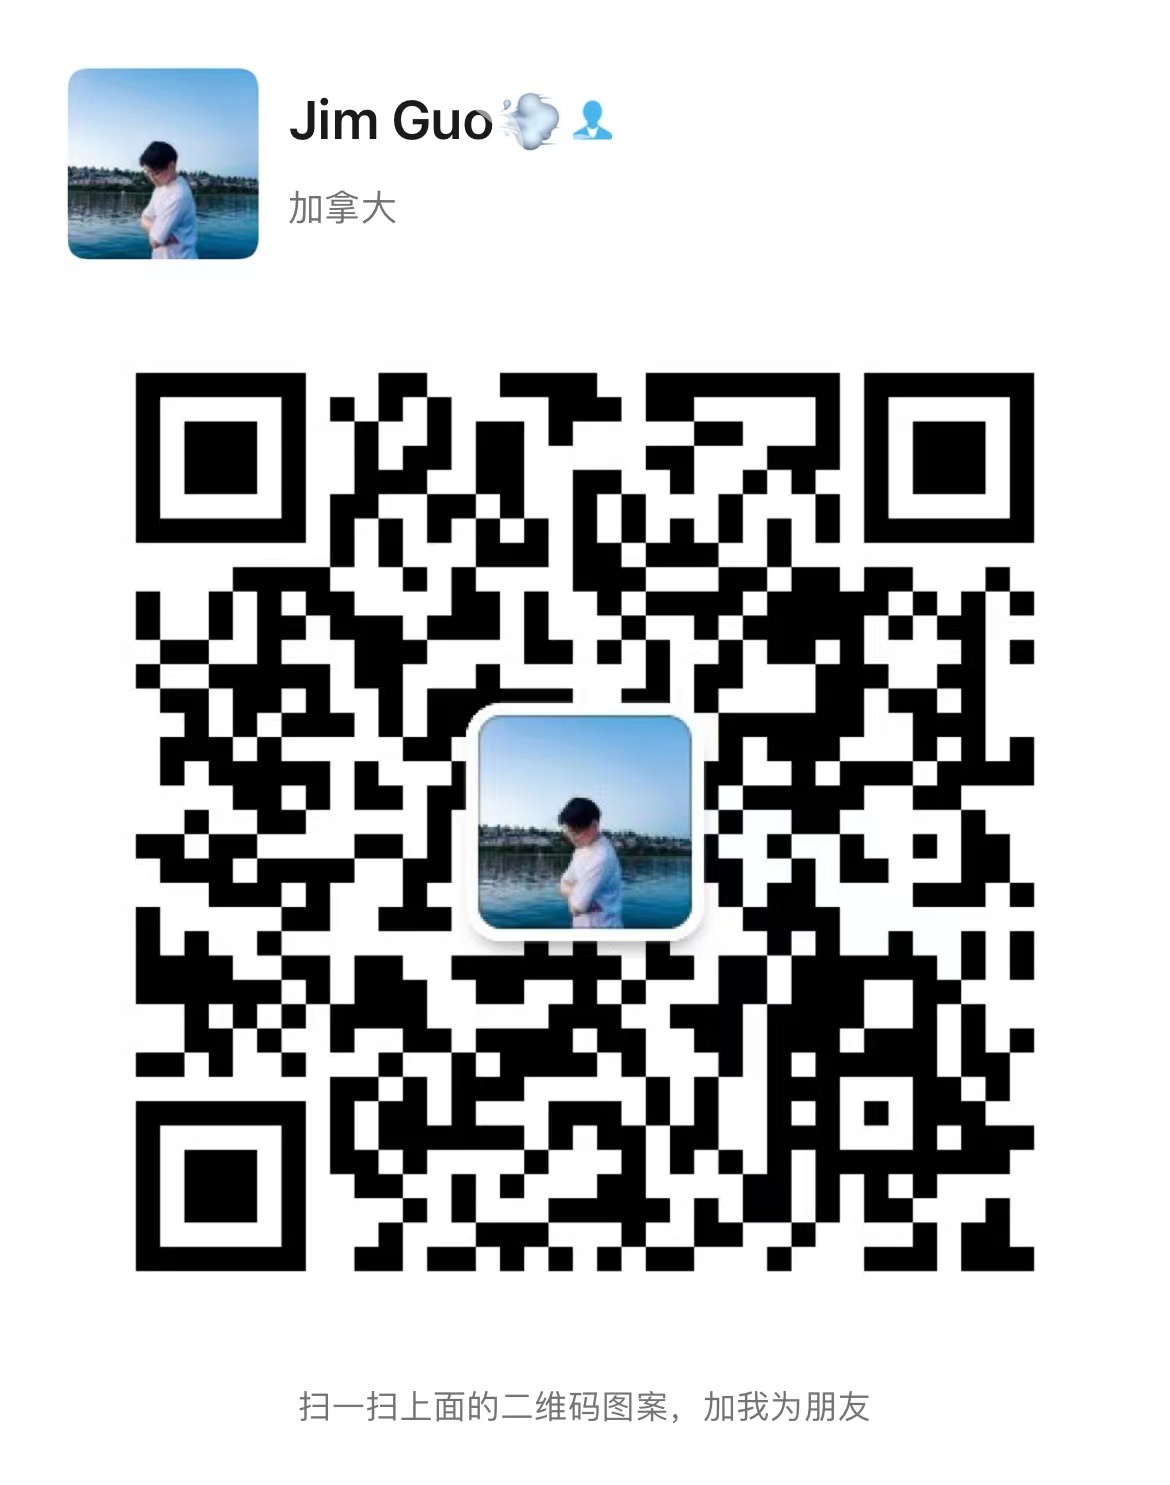 220701020309_WeChat Image_20220701020101.jpg